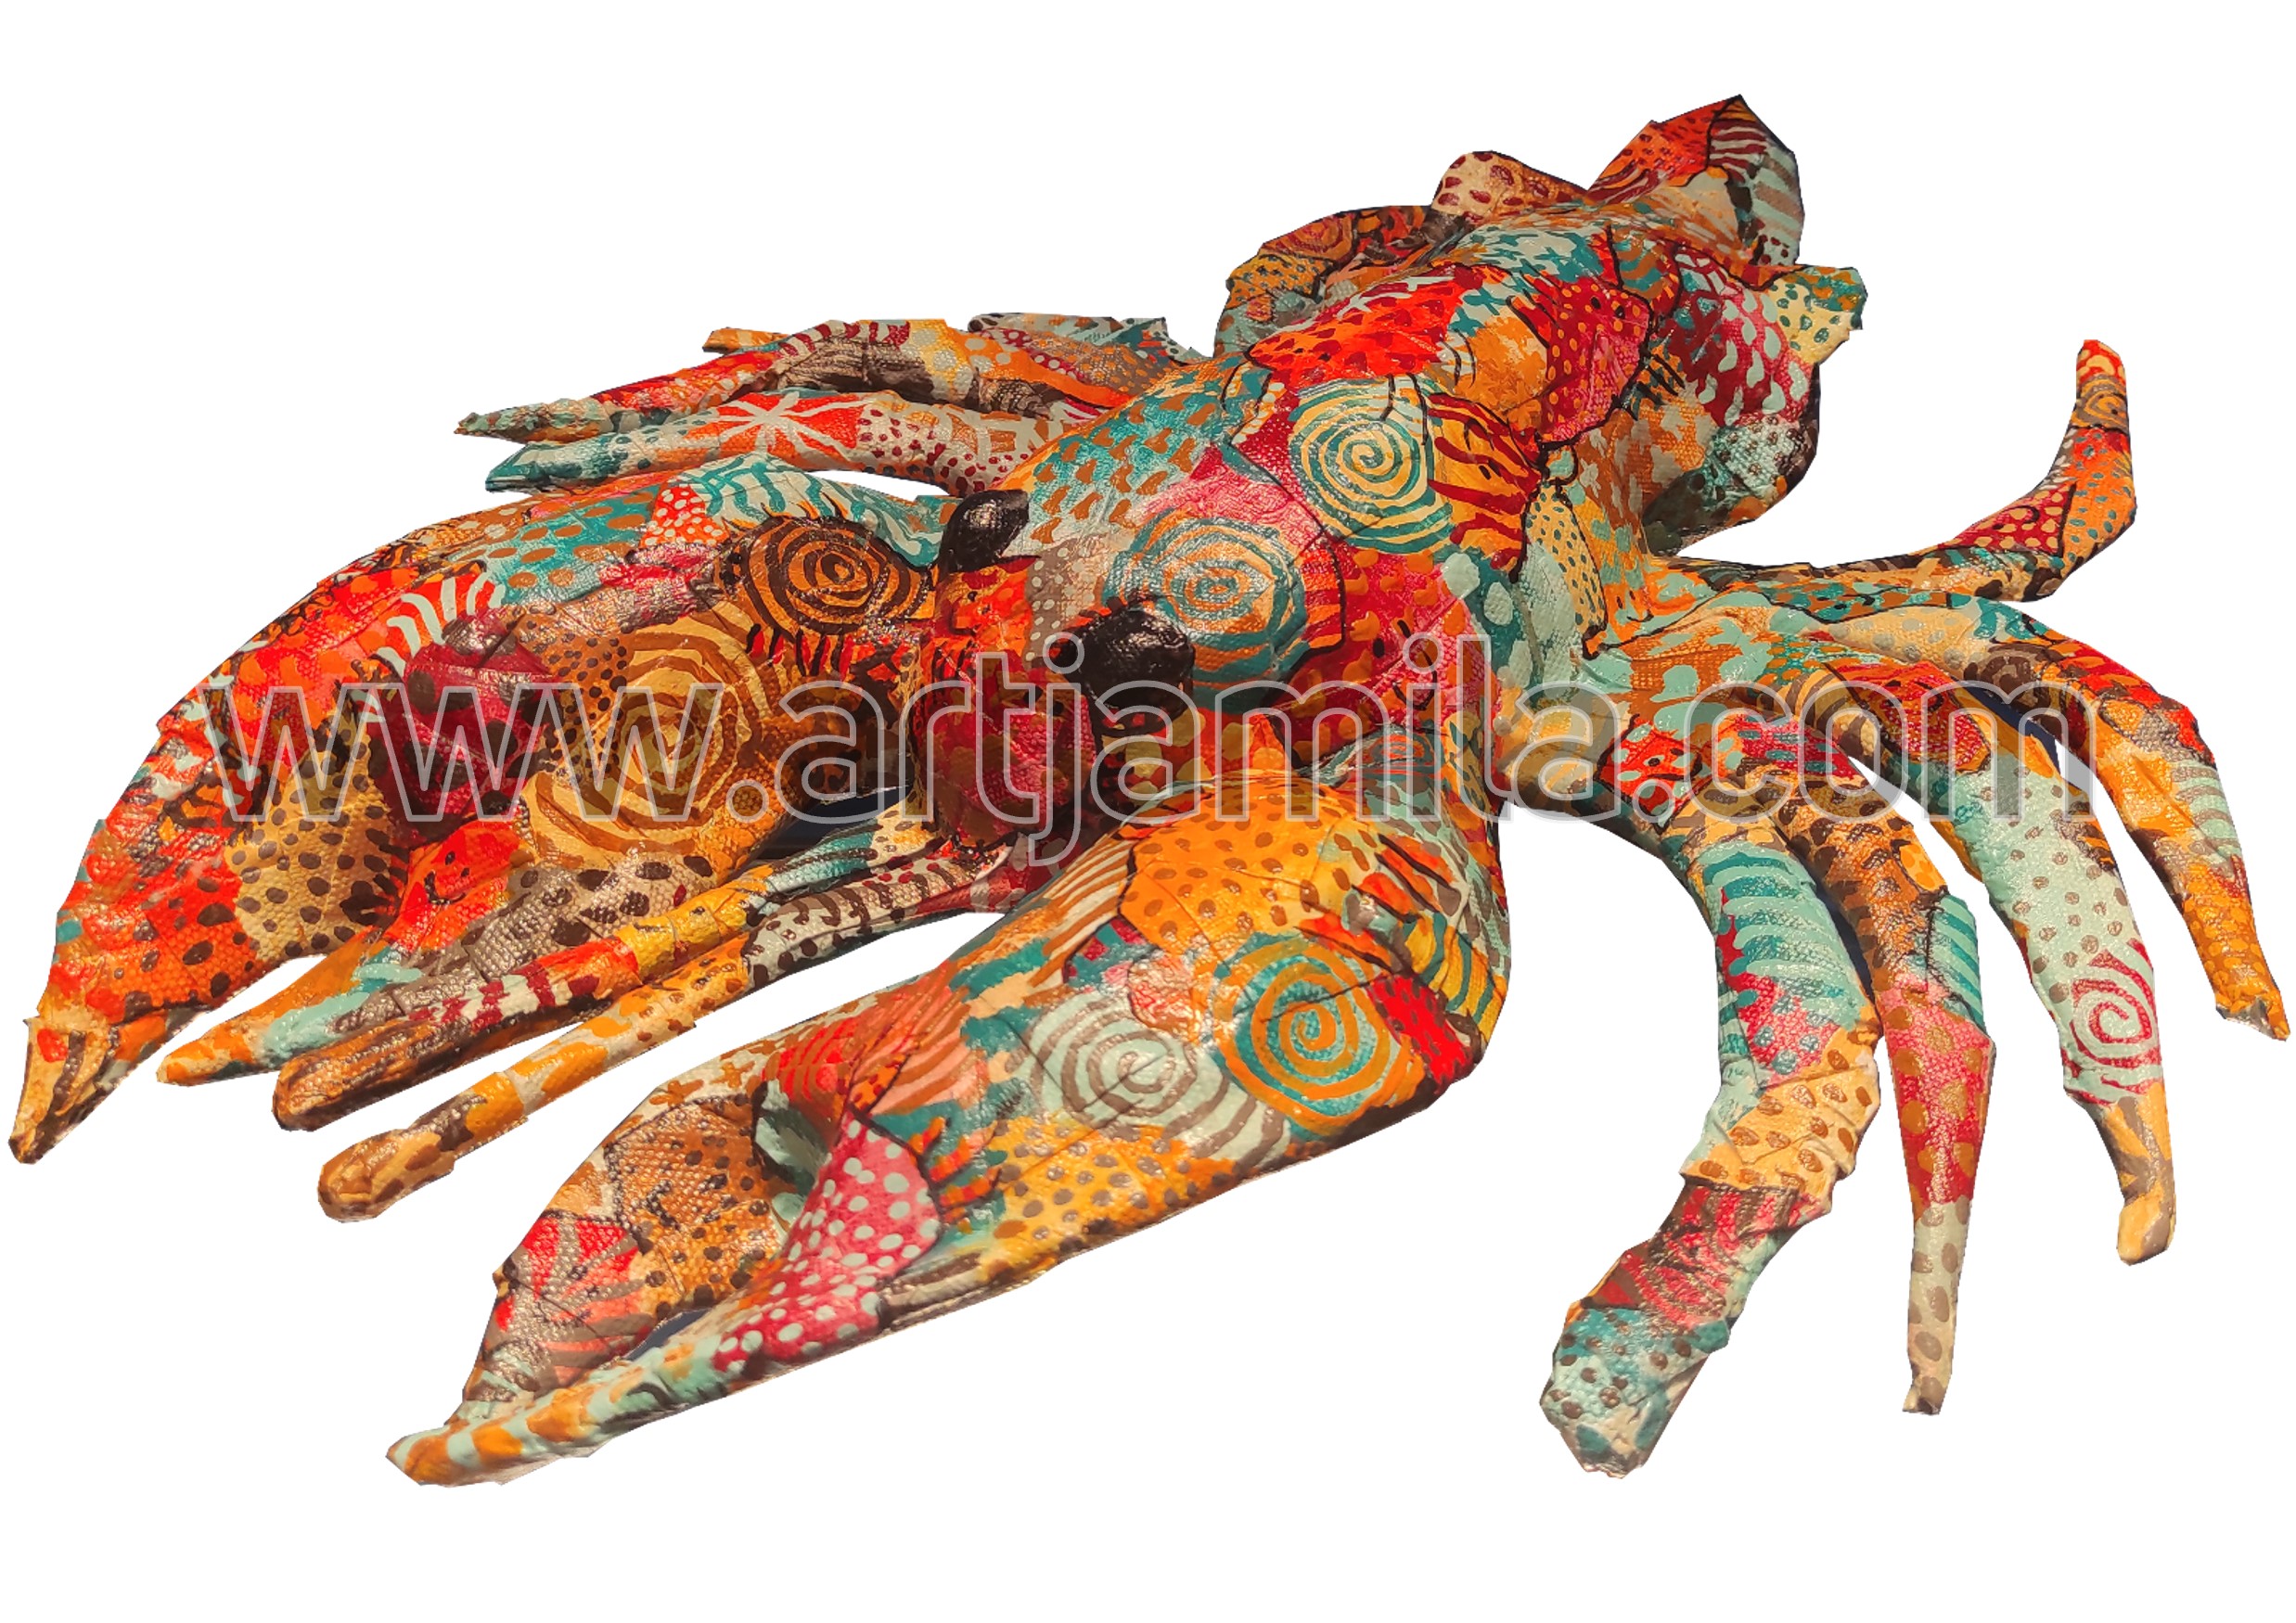 Marine Life Reborn from Waste (Lobster, Series 2) watermark